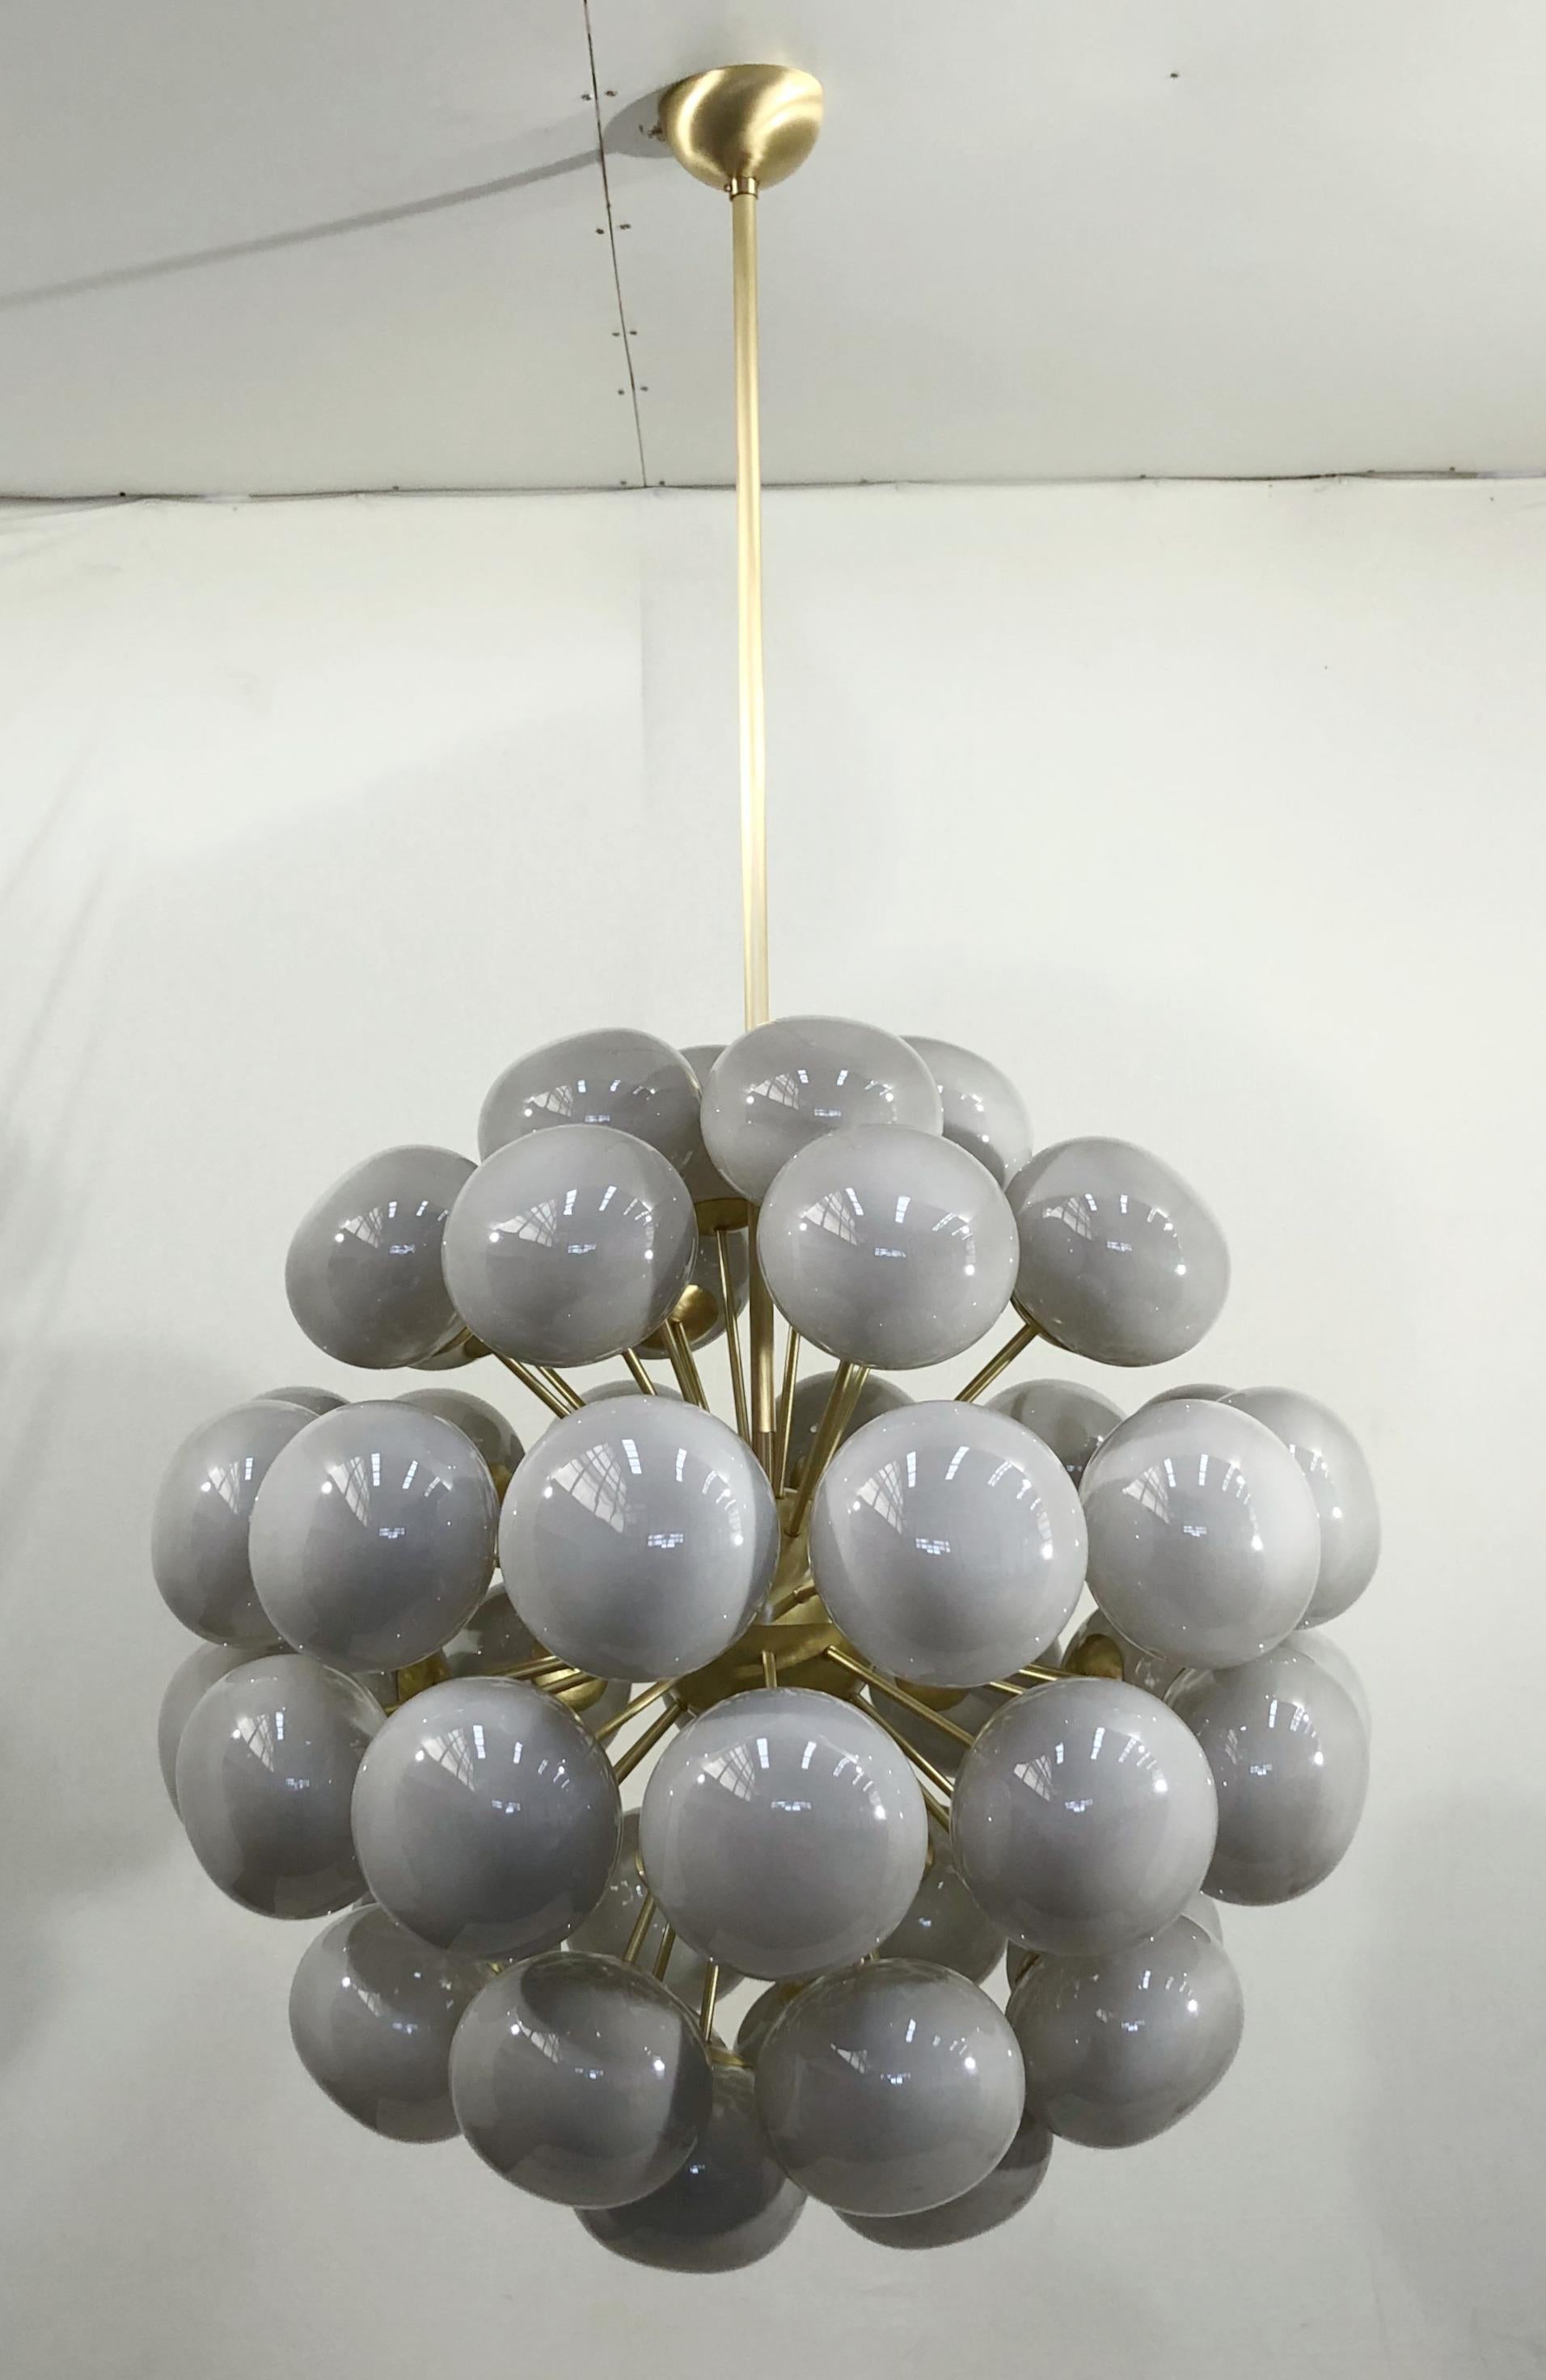 Lustre spoutnik italien avec 48 abat-jour en verre gris de Murano montés sur une monture en laiton / Design/One par Fabio Bergomi pour Fabio LTD / Fabriqué en Italie
48 lampes / type E12 ou E14 / max 40W chacune
Dimensions : diamètre 38 pouces /